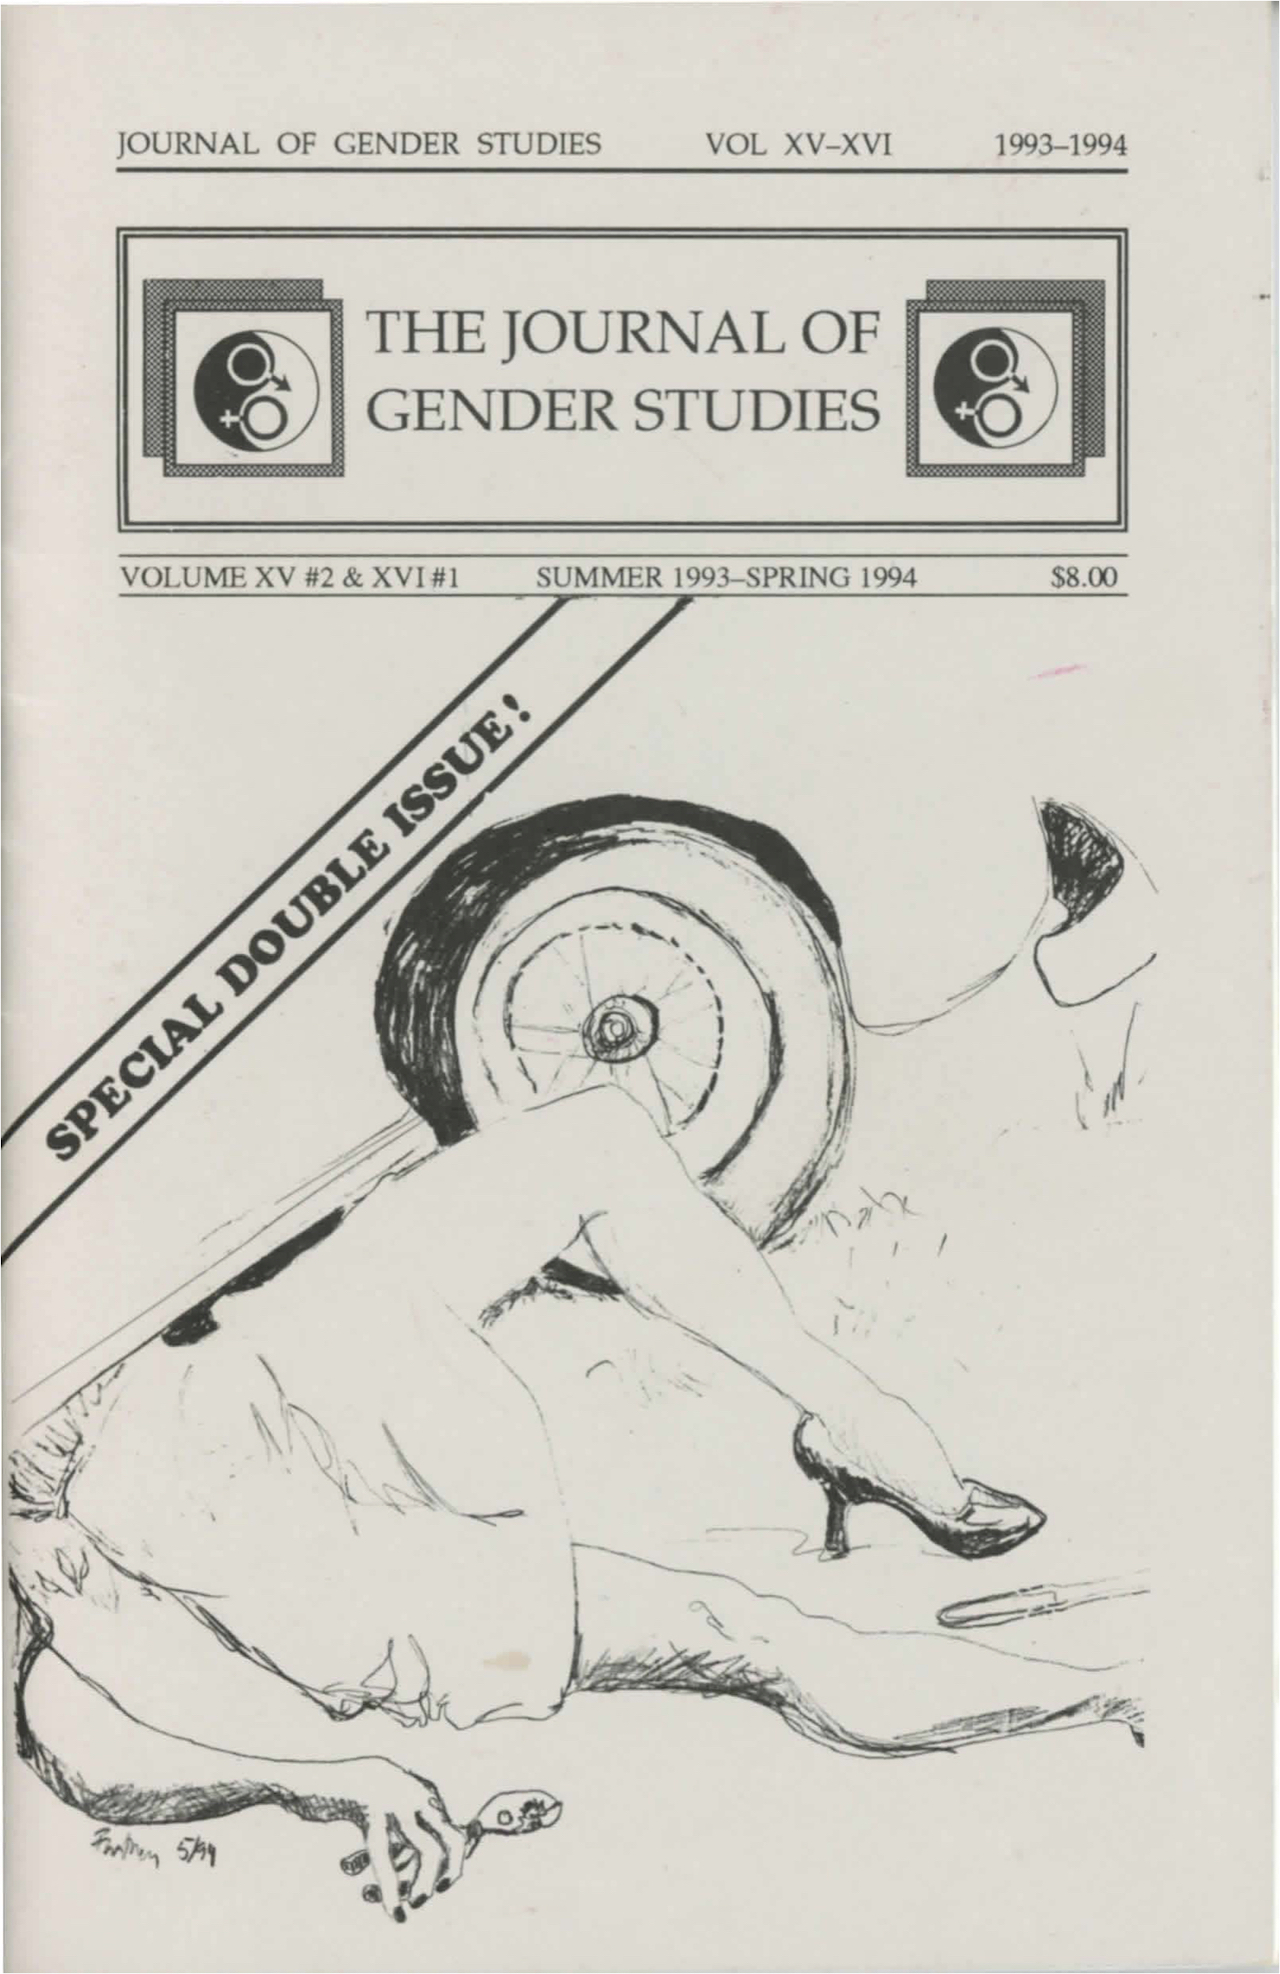 Cover of the Journal of Gender Studies Vol. XV #2 & XVI #1 (Summer 1993 - Spring 1994) (courtesy Digital Transgender Archive)